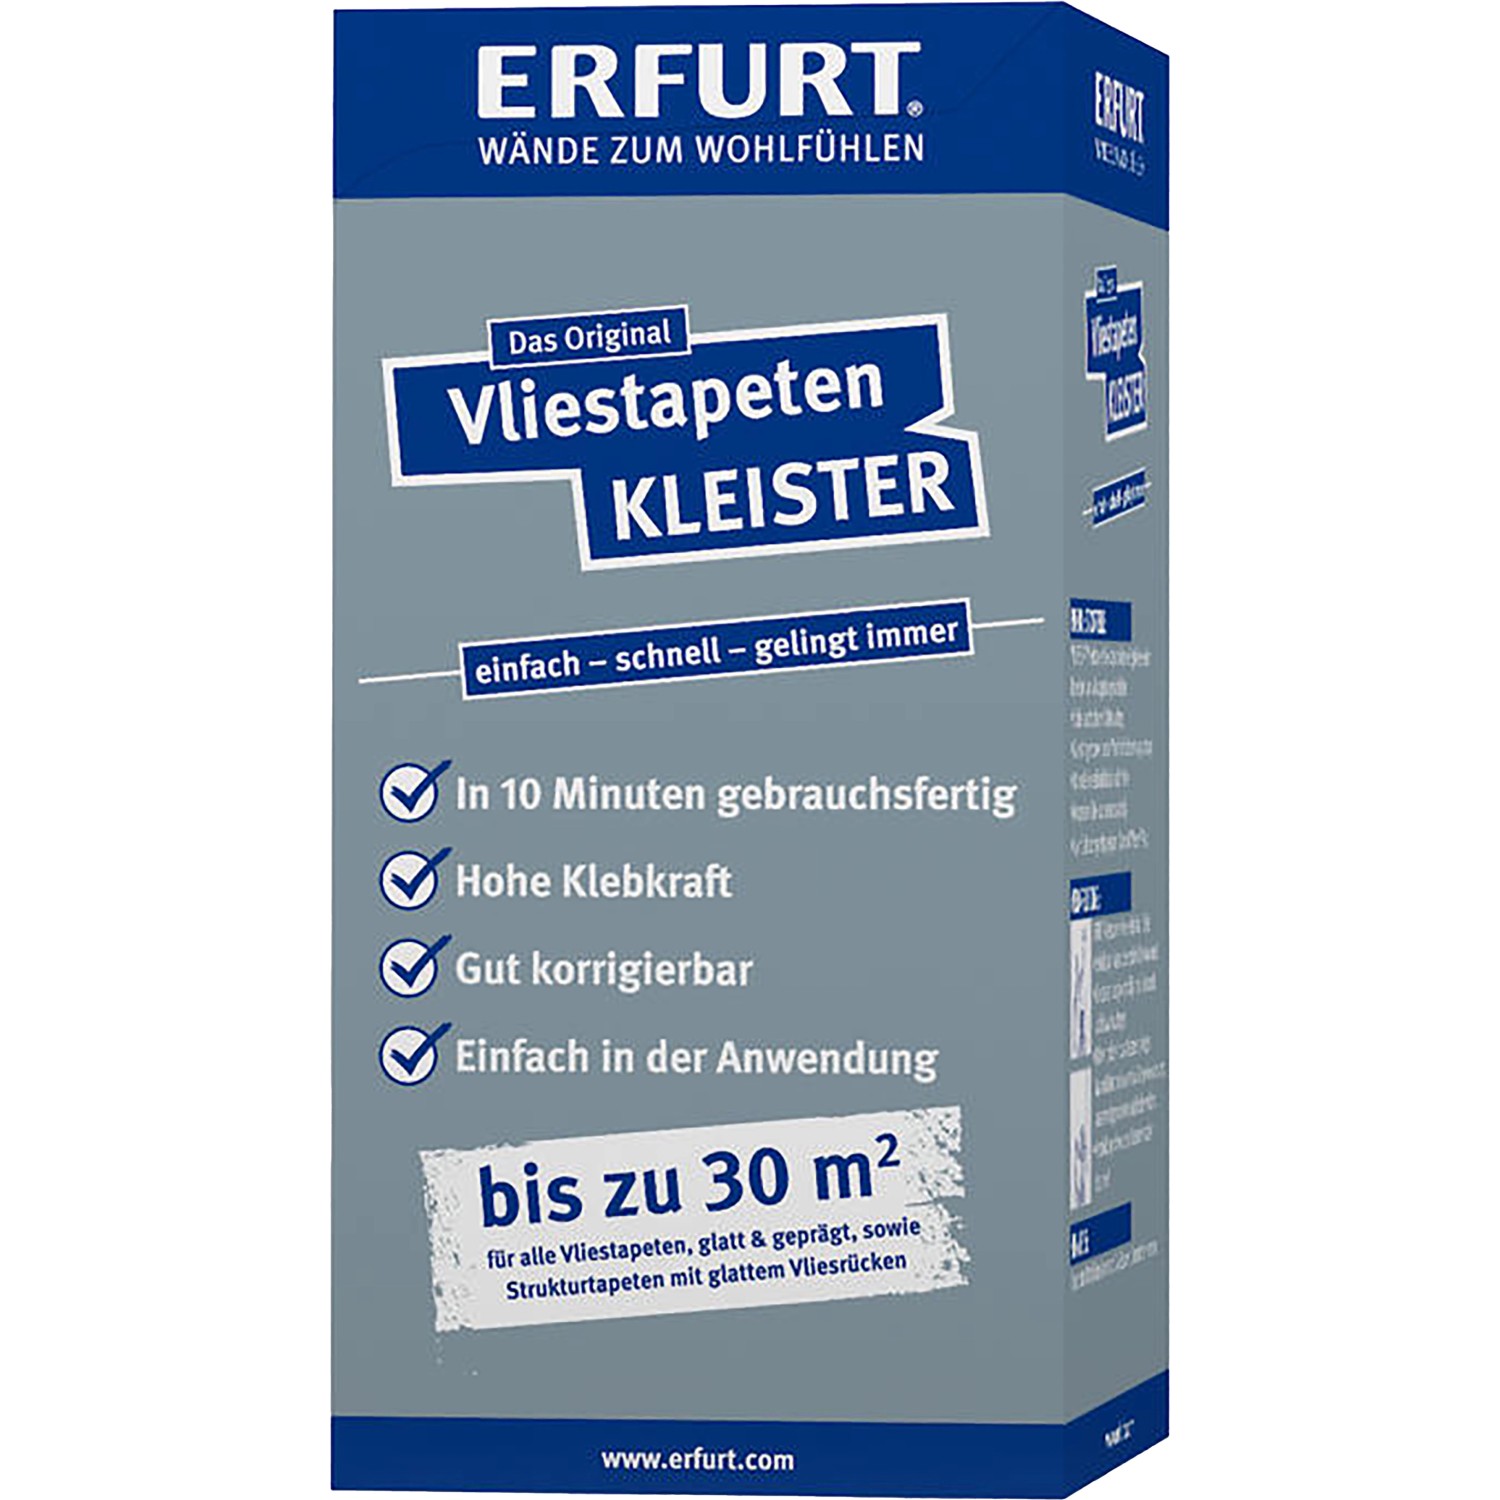 Erfurt Vliestapeten-Kleister 200 g von Erfurt